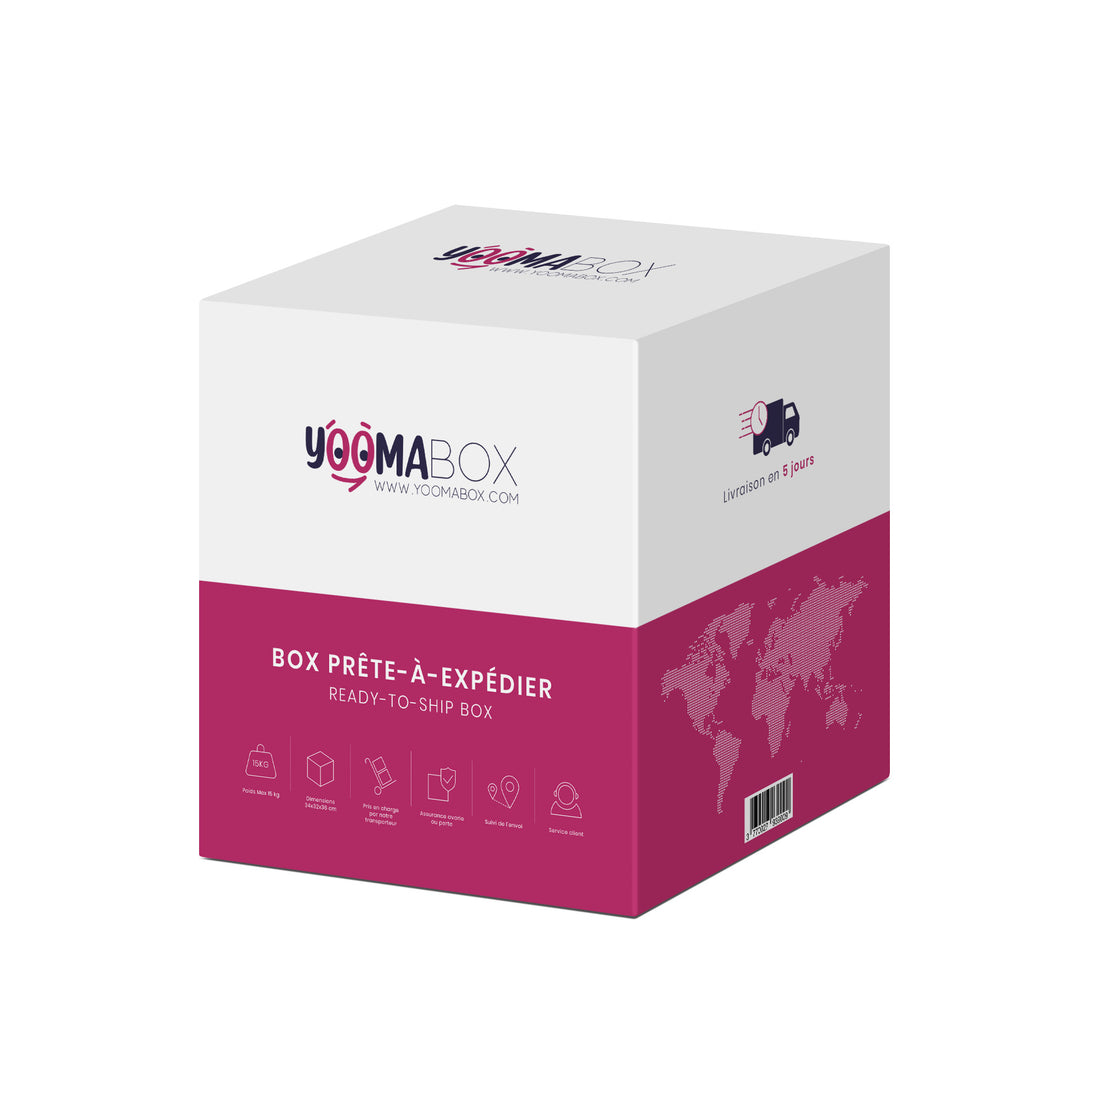 Emballages Yoomabox : Des Solutions Innovantes pour l'Expédition de Colis